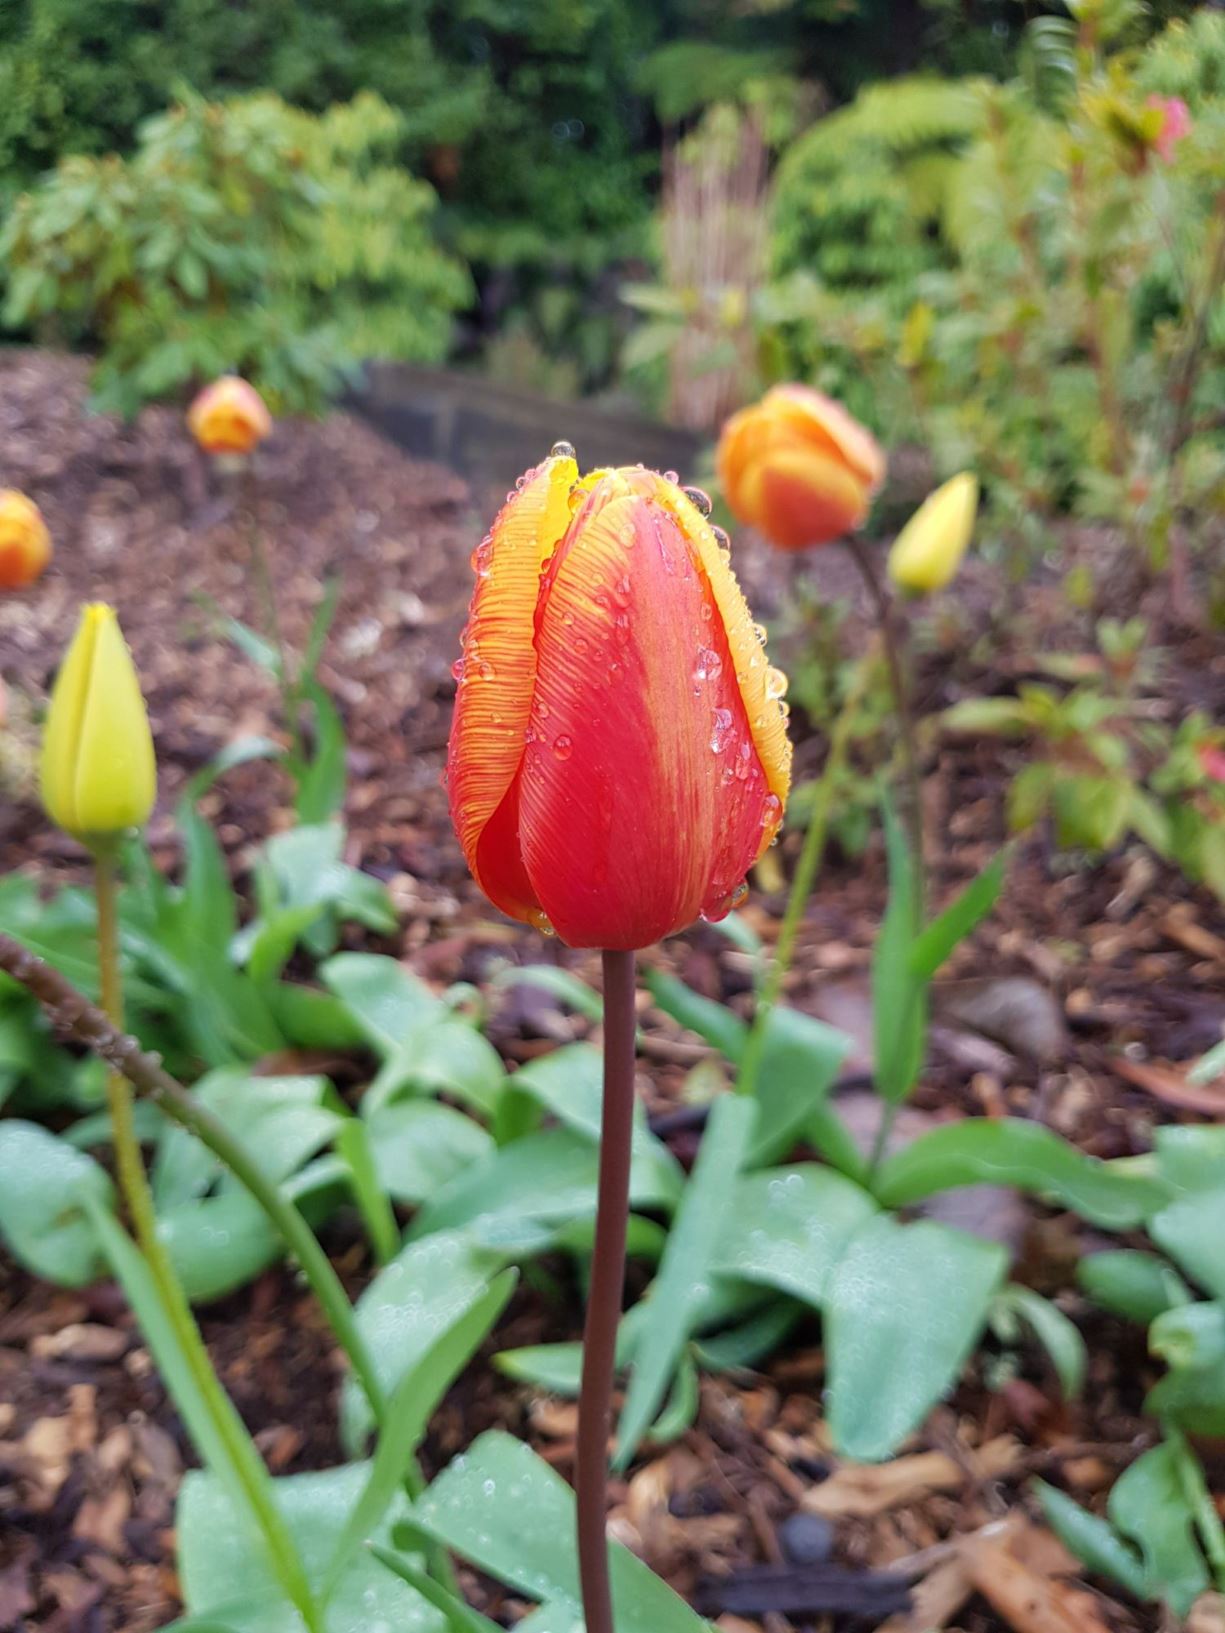 Tulipa 'Kees Nelis'